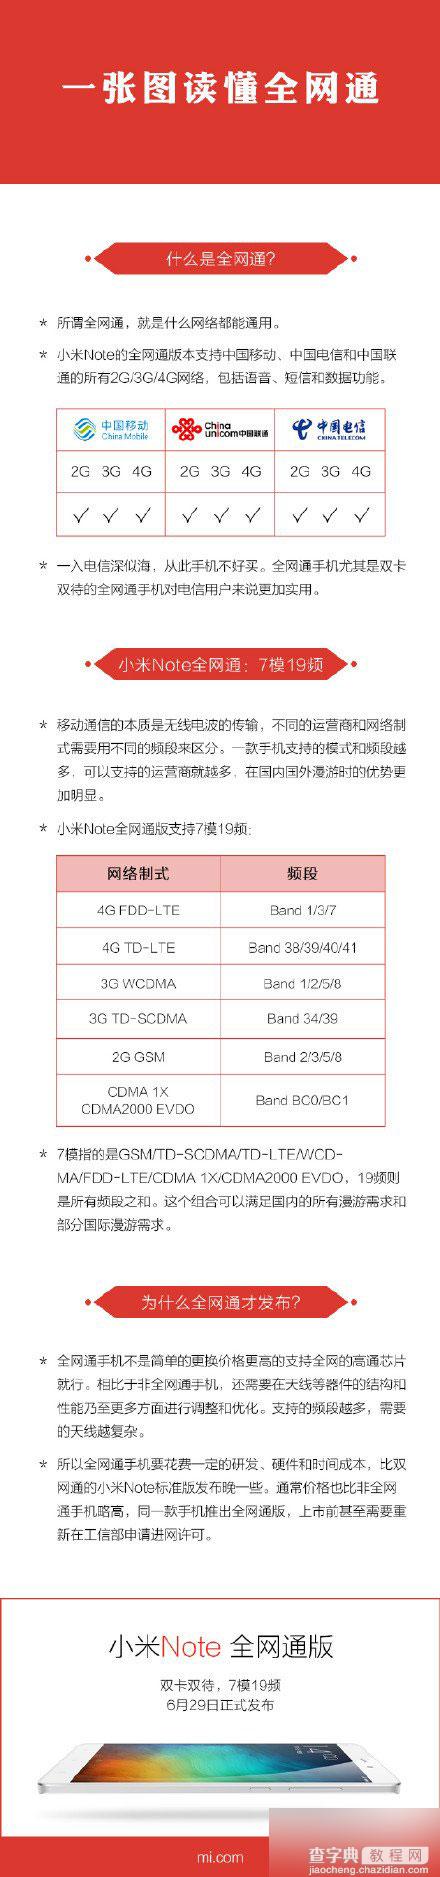 小米note全网通支持移动联通电信4G/3G/2G吗?有几个版本?1